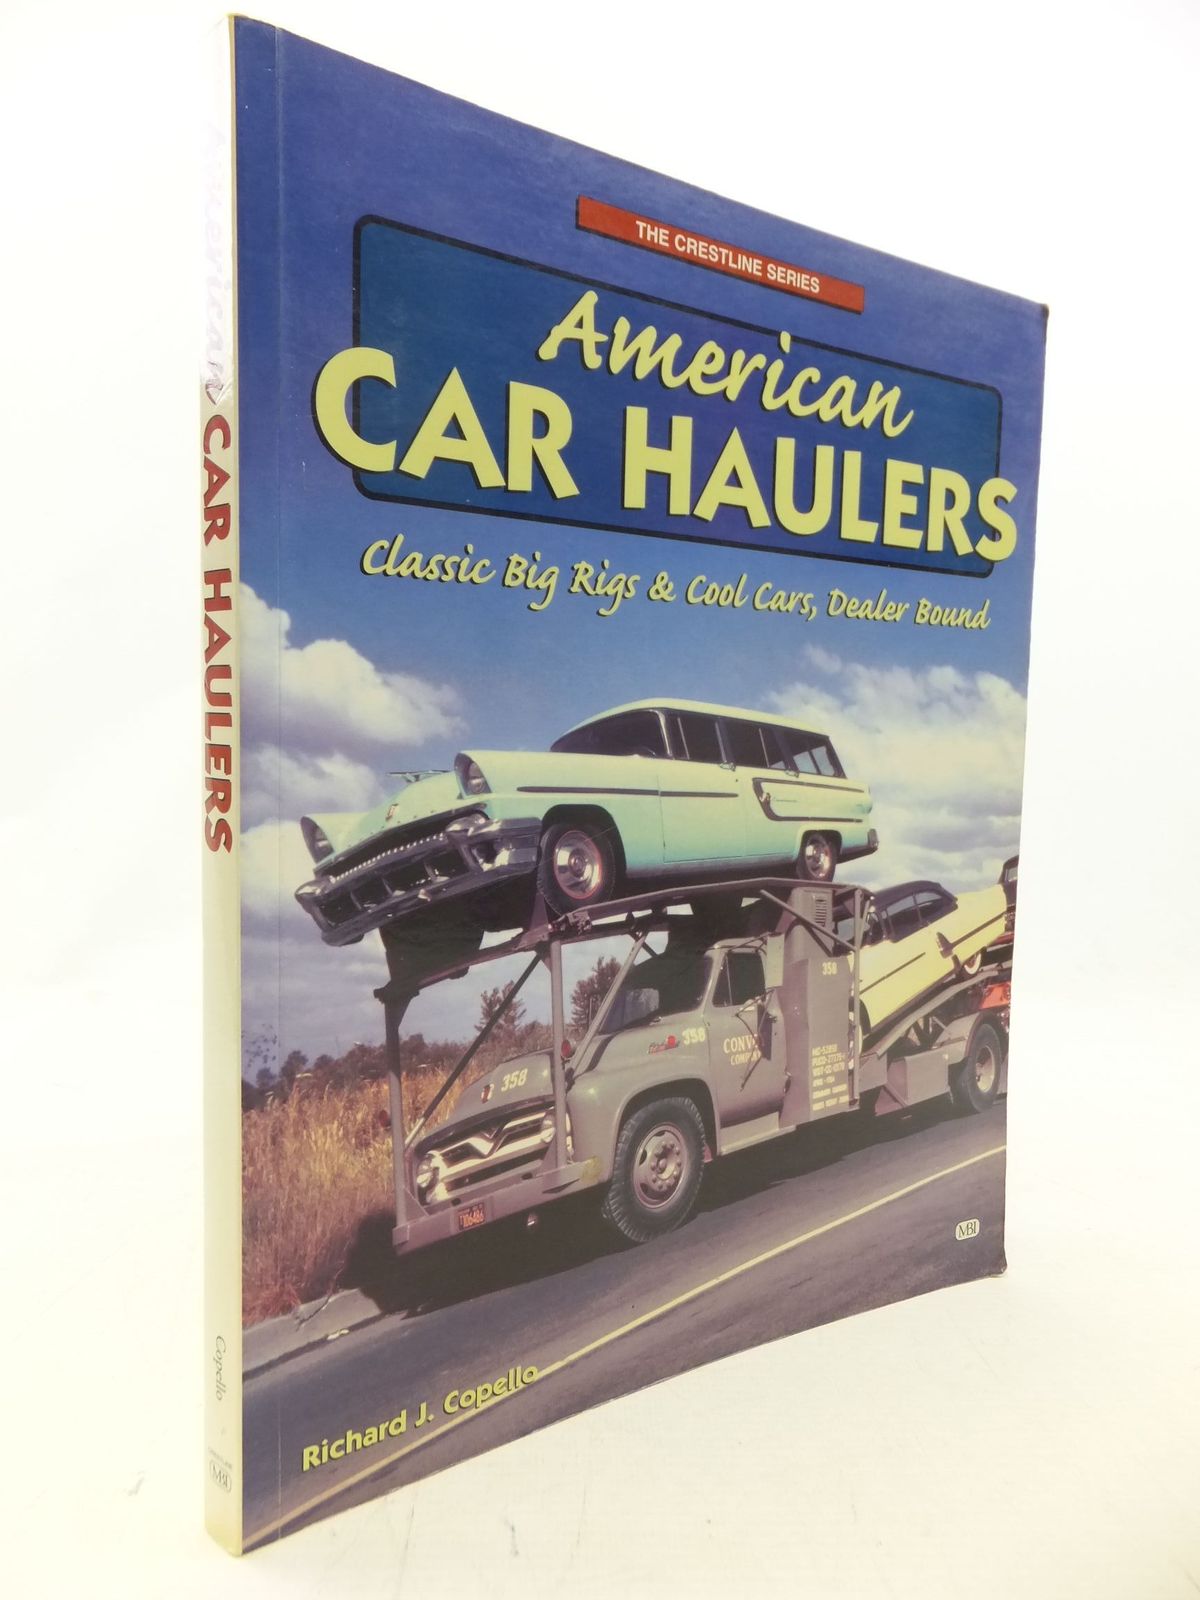 American Car Haulers